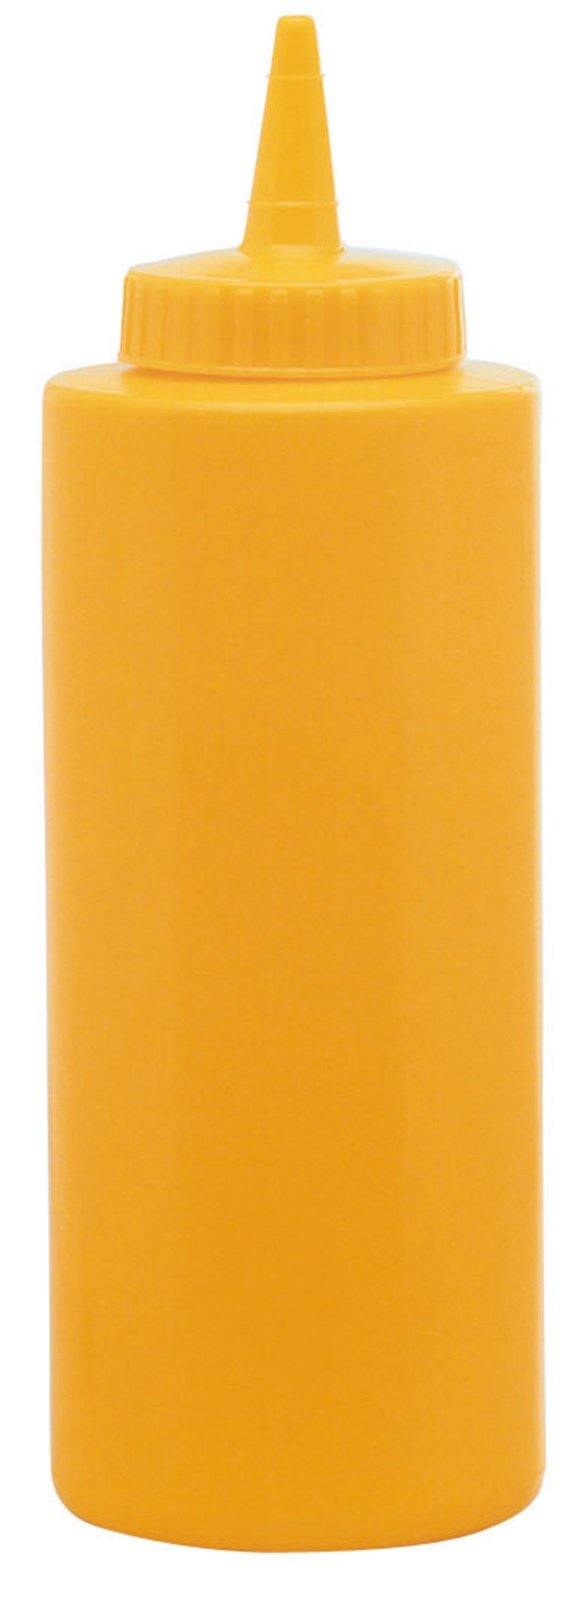 Saucen-Dispenser gelb 354ml - MyLiving24